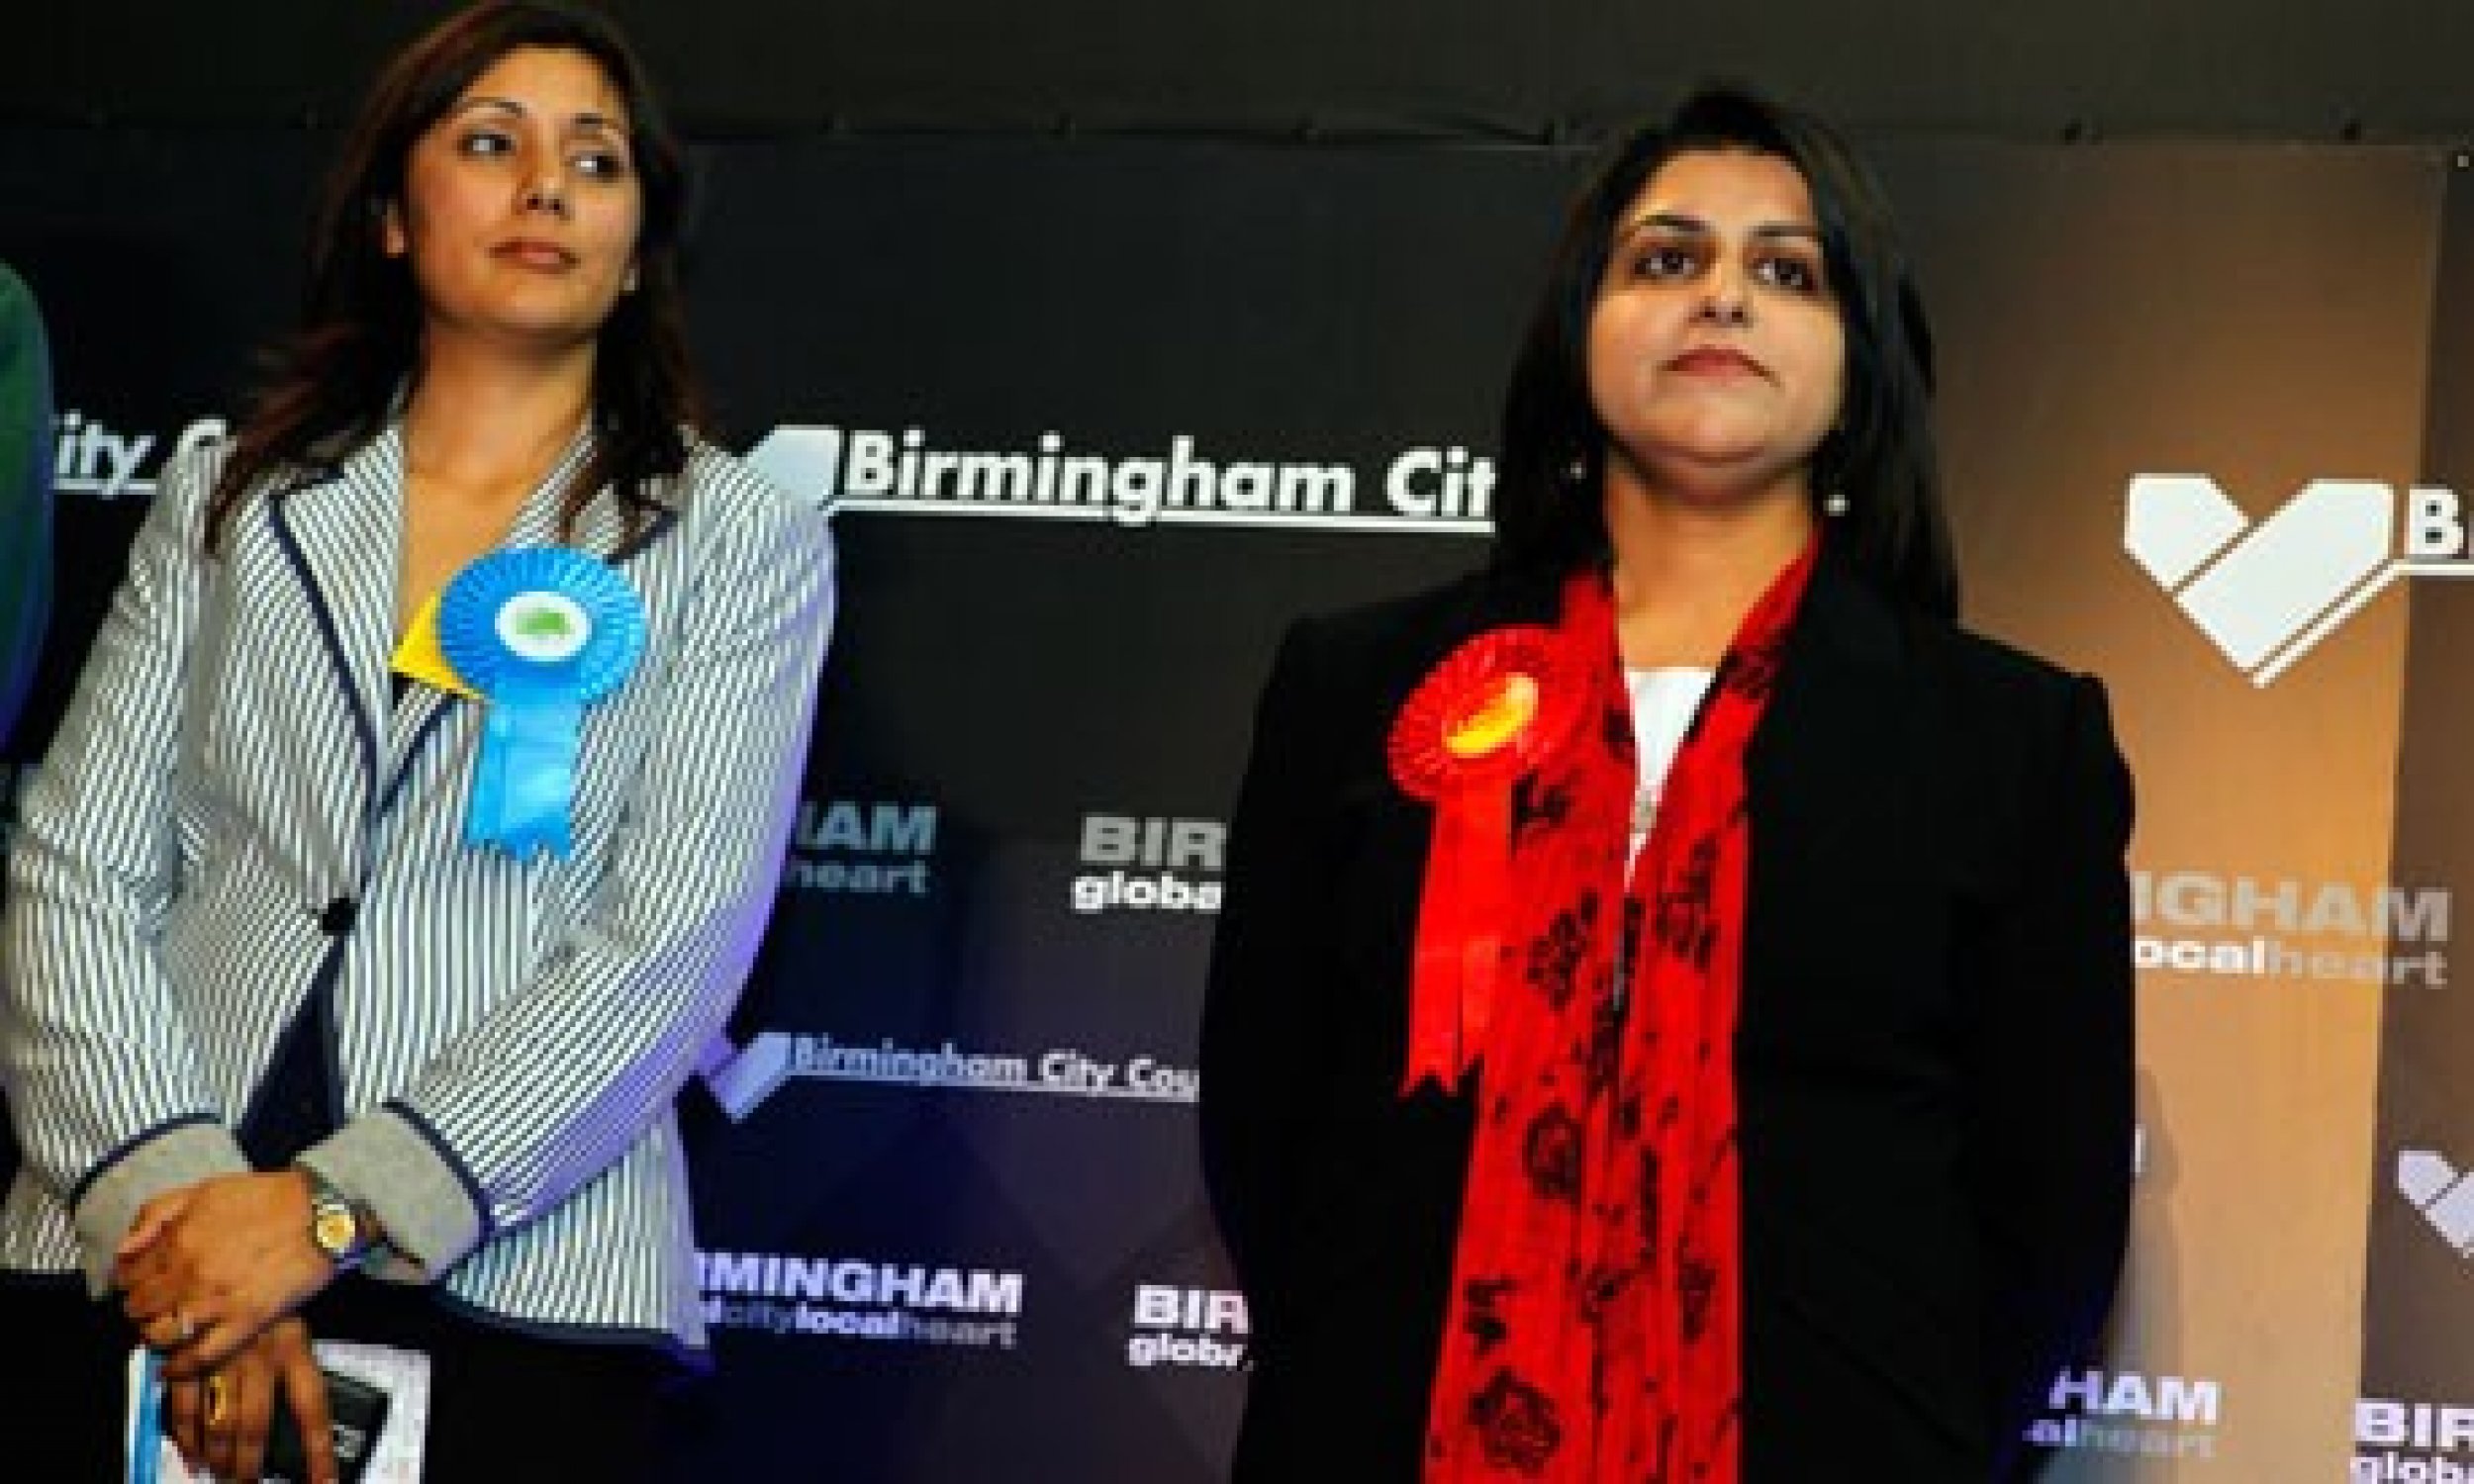 Shabana Mahmood Labour, Ladywood-Birmingham